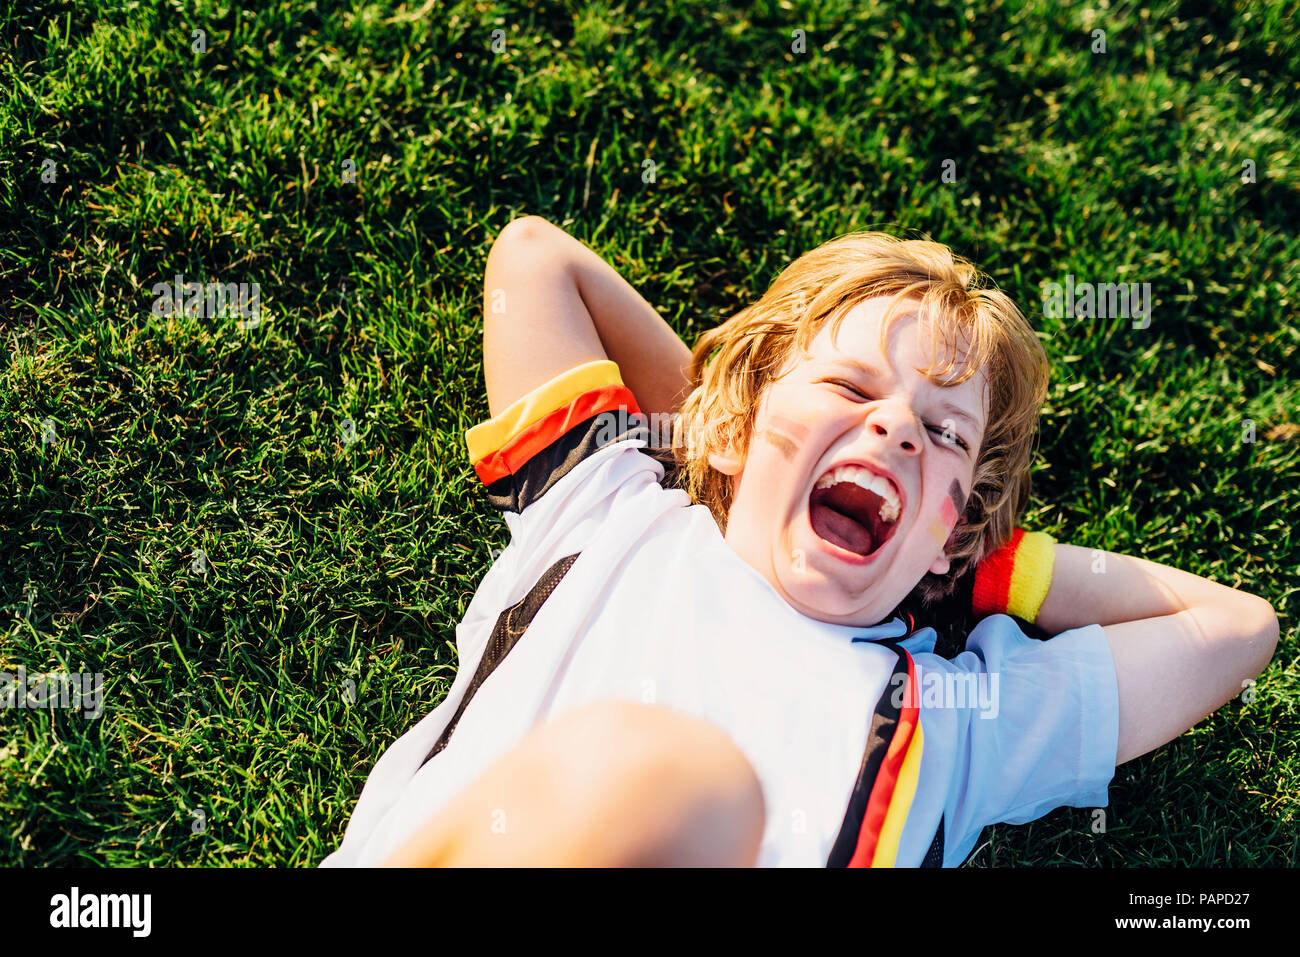 Garçon en allemand soccer shirt lying on grass, laughimg Banque D'Images